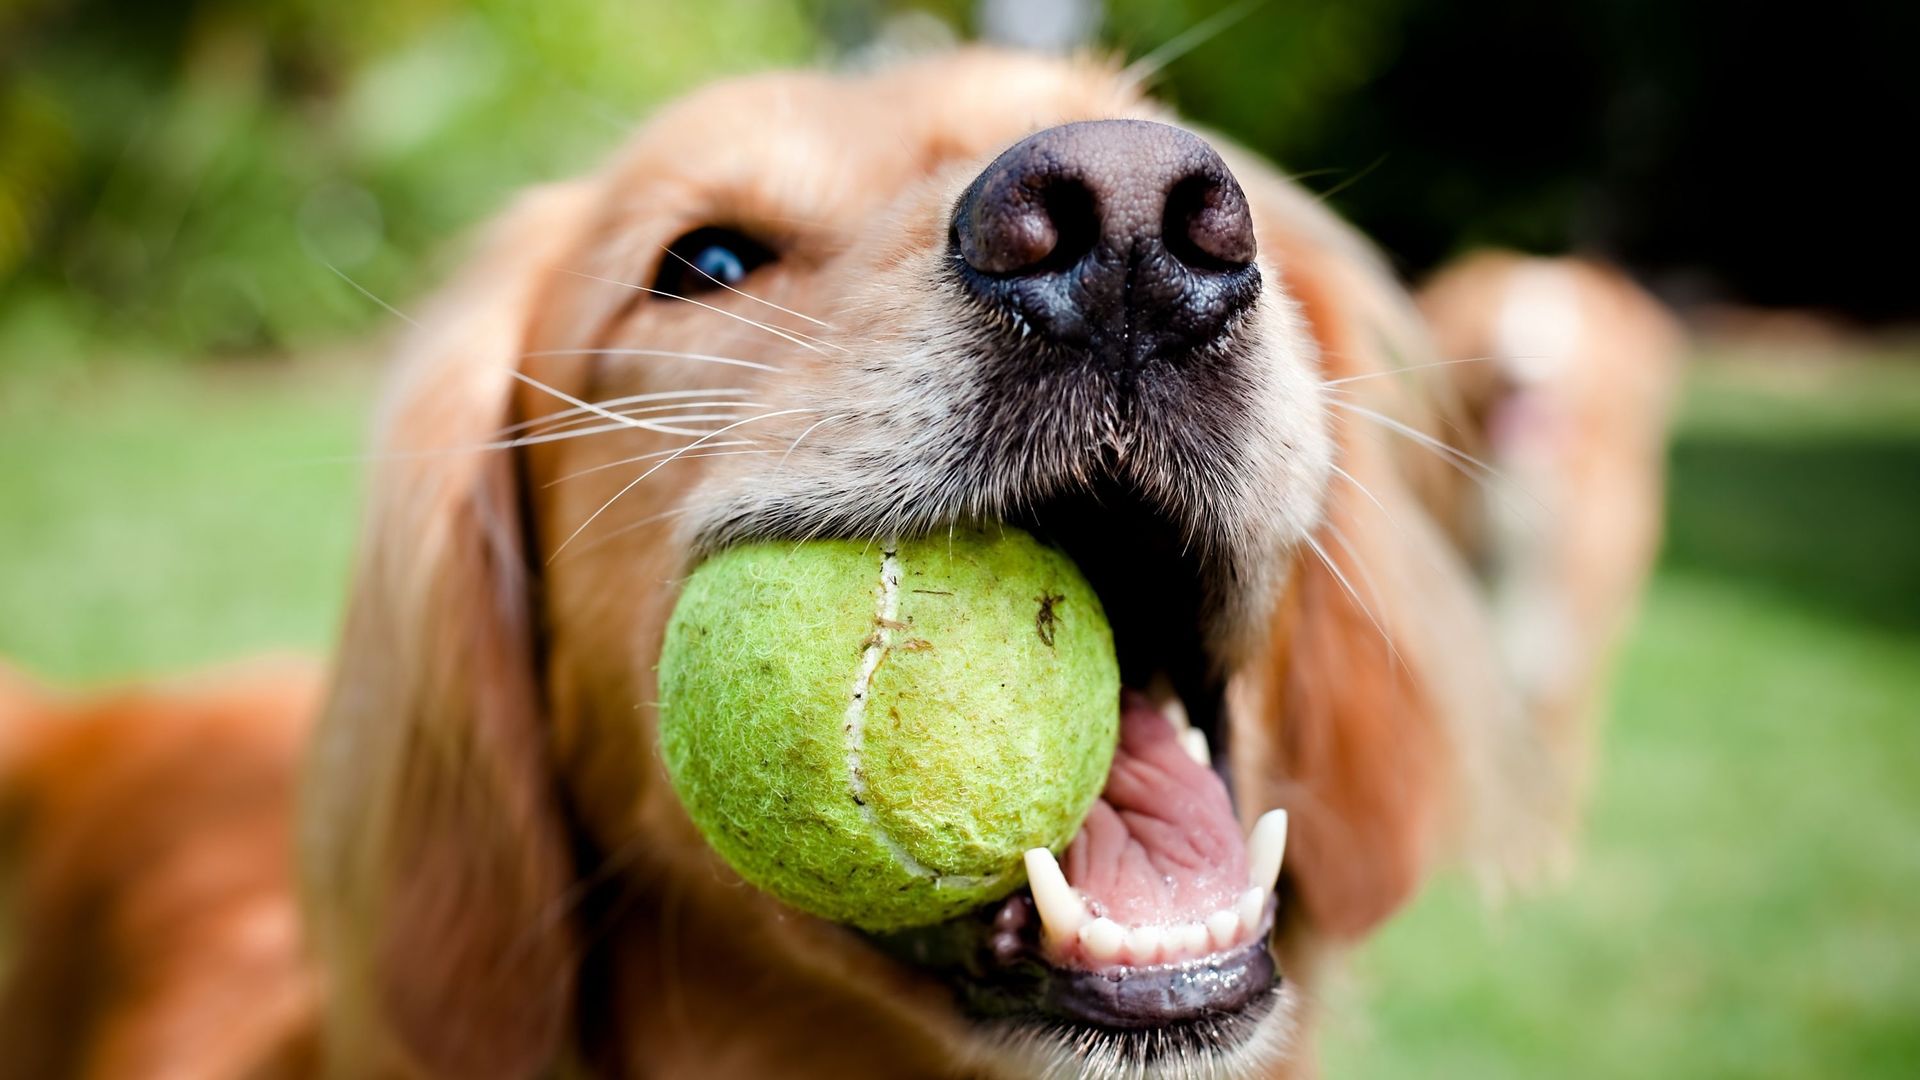 La balle de tennis, un danger pour le chien ? 